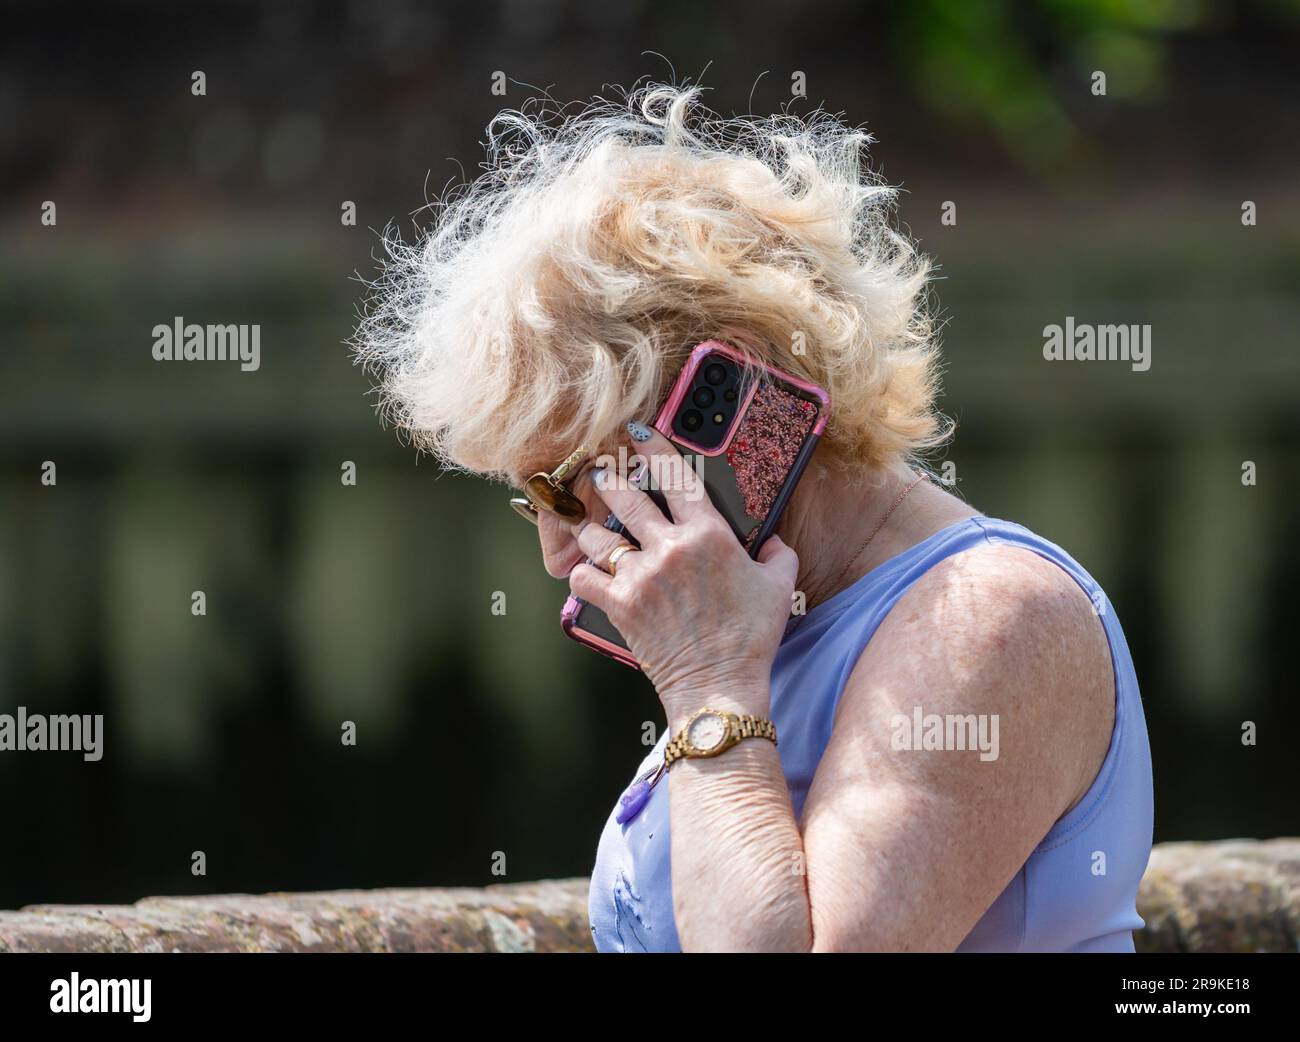 Ältere Frau steht draußen und spricht mit einem Handy, Handy oder Smartphone. Seniorin auf dem neuesten Stand in Sachen moderne Technologie, Großbritannien. Stockfoto